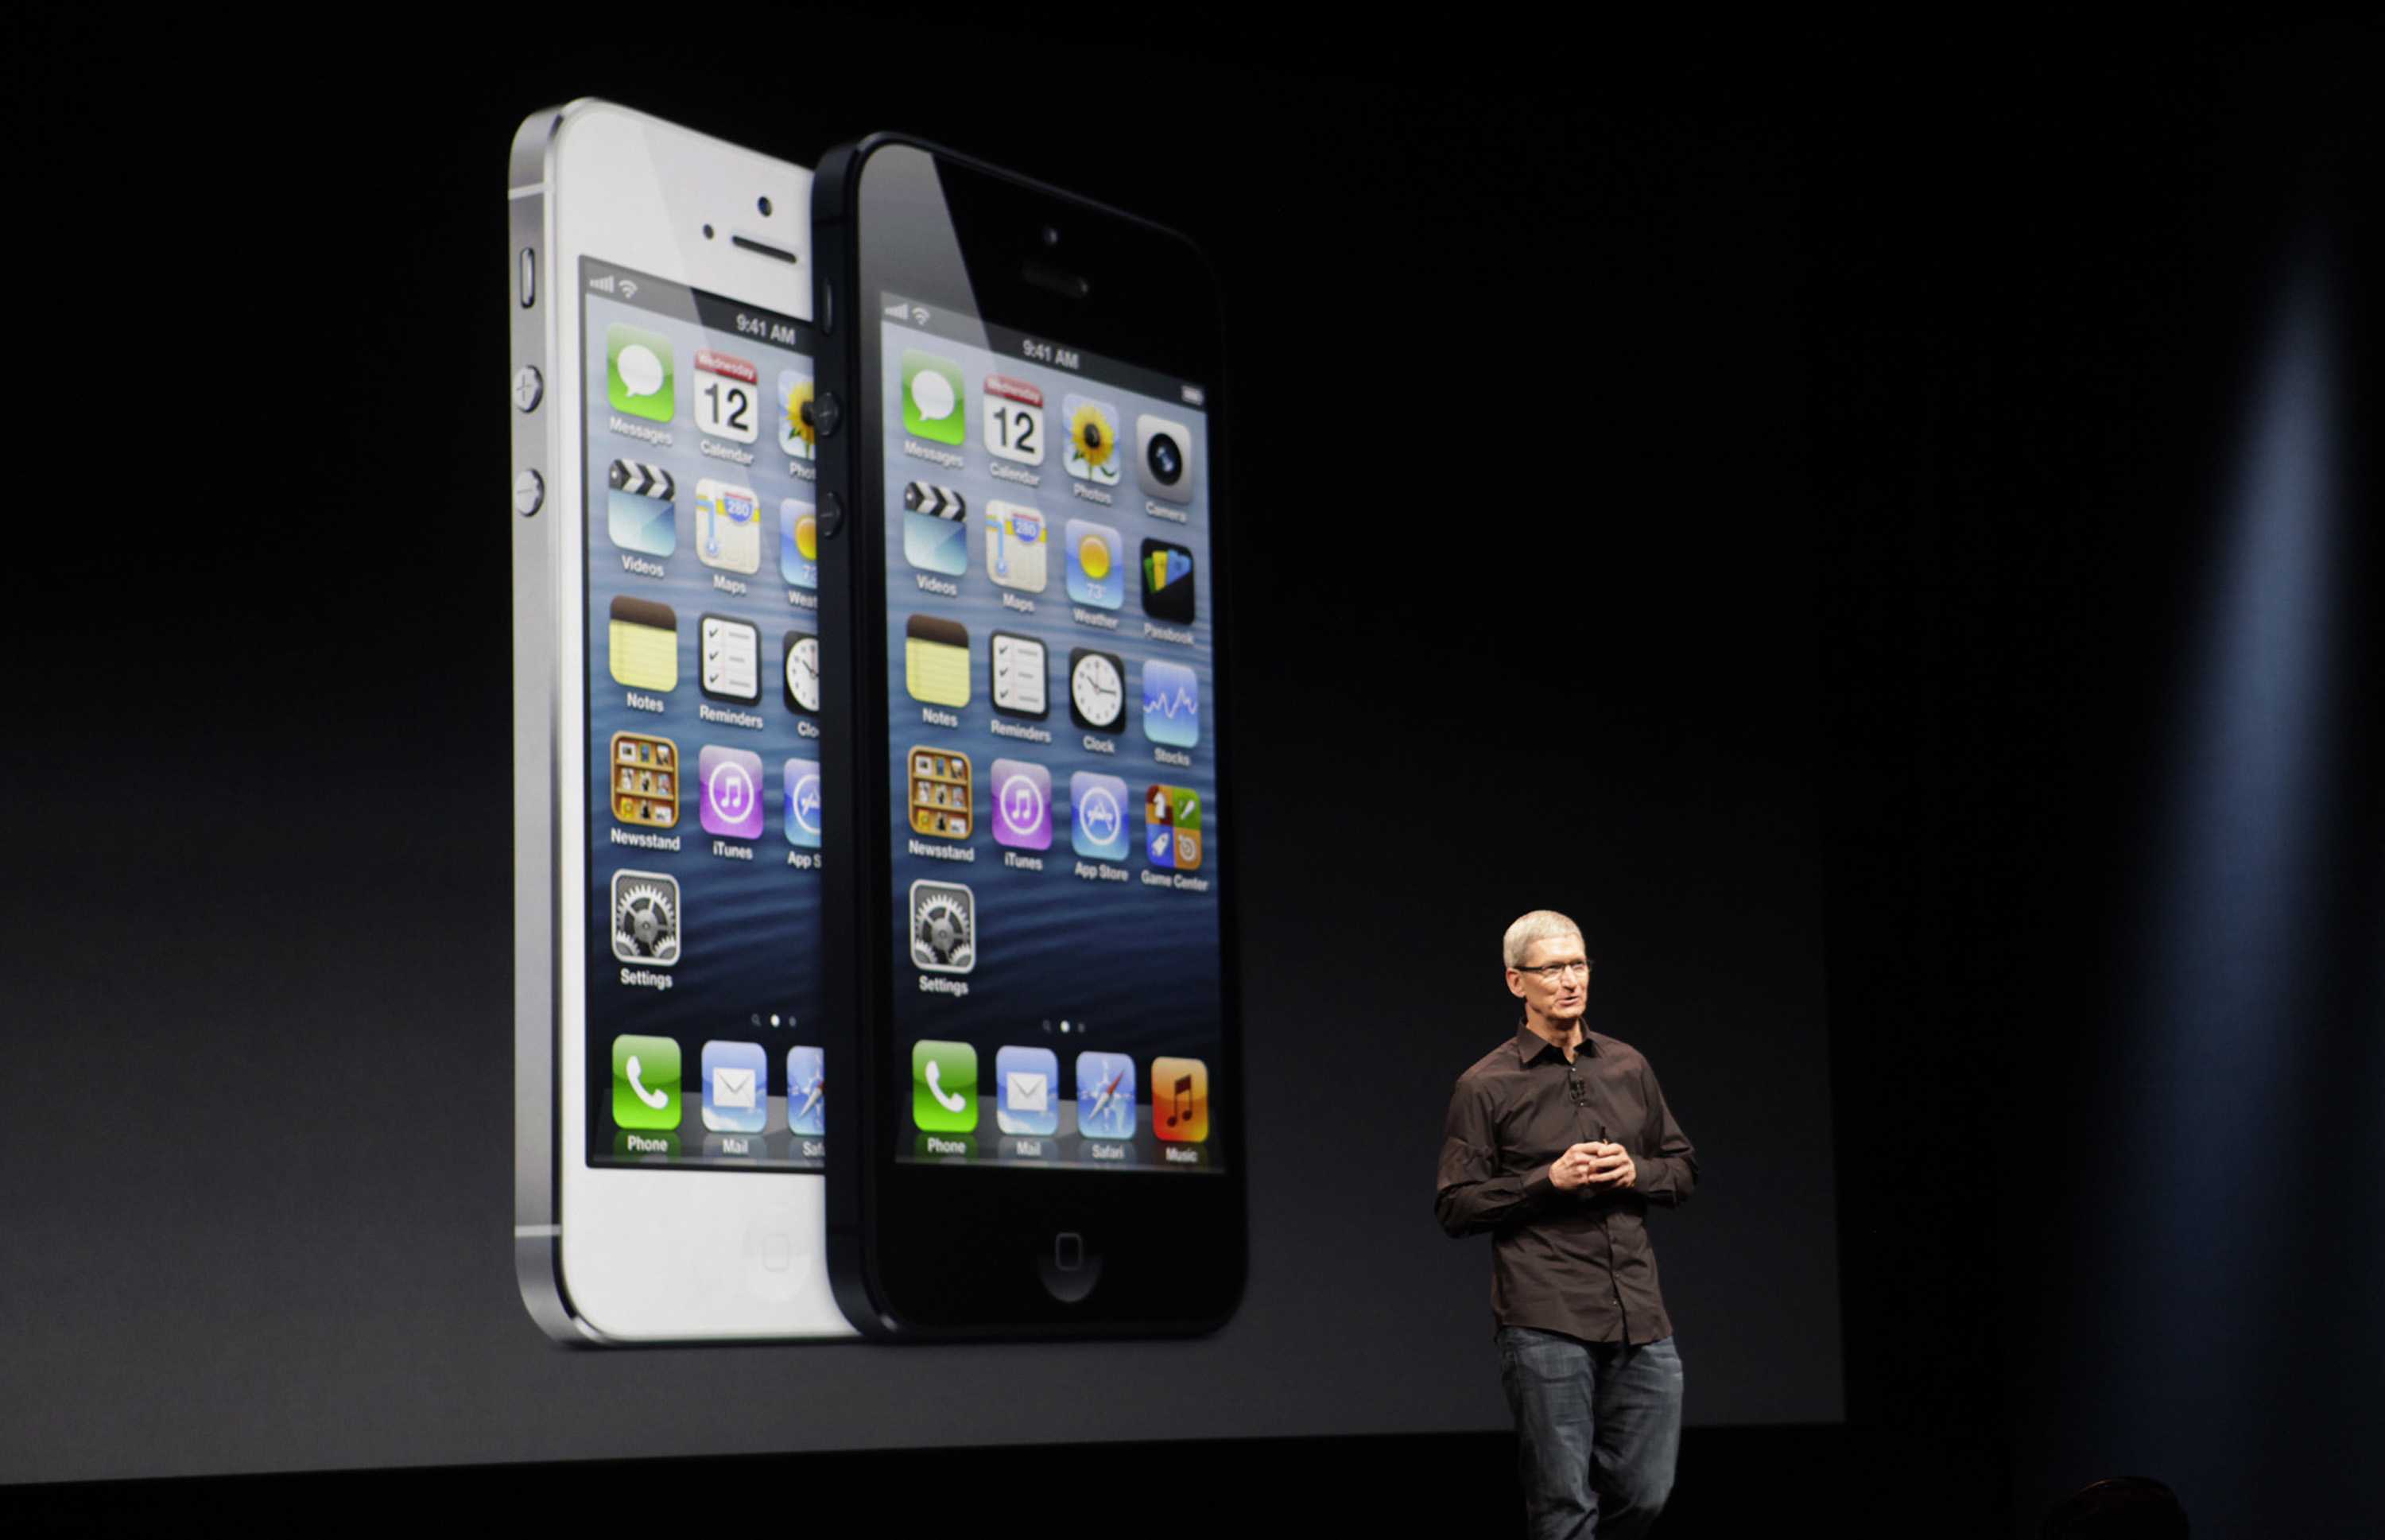 Iphone 5 год. Стив Джобс презентация iphone 5. Стив Джобс презентация iphone 4s. Apple iphone 5. Айфон Аппле презентация айфона.